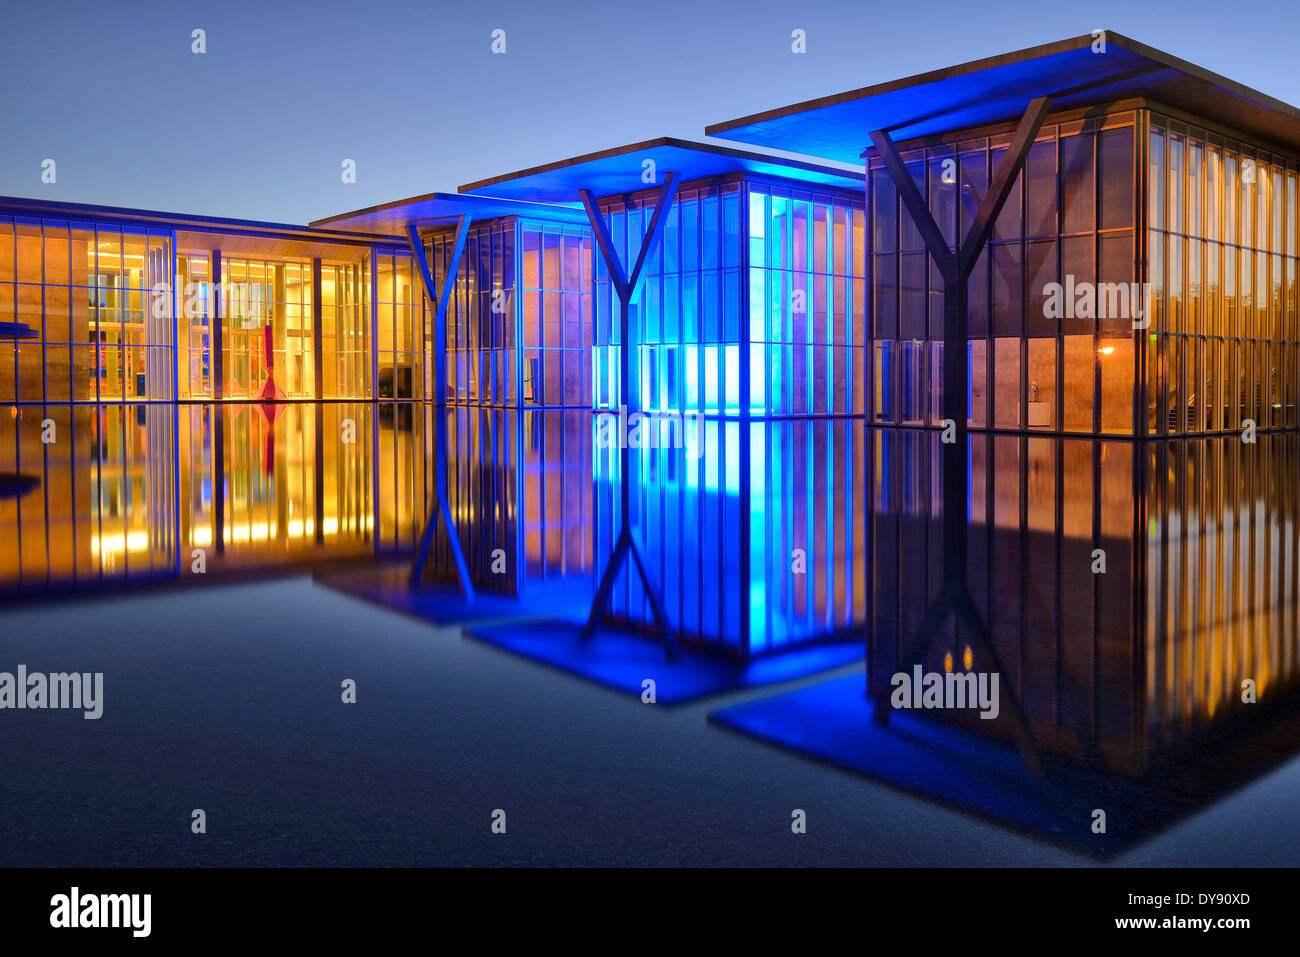 USA Vereinigte Staaten Amerika Texas Fort Worth Museum für moderne Kunst moderne Architektur Museumsnacht Gebäude Museum Beleuchtung Stockfoto